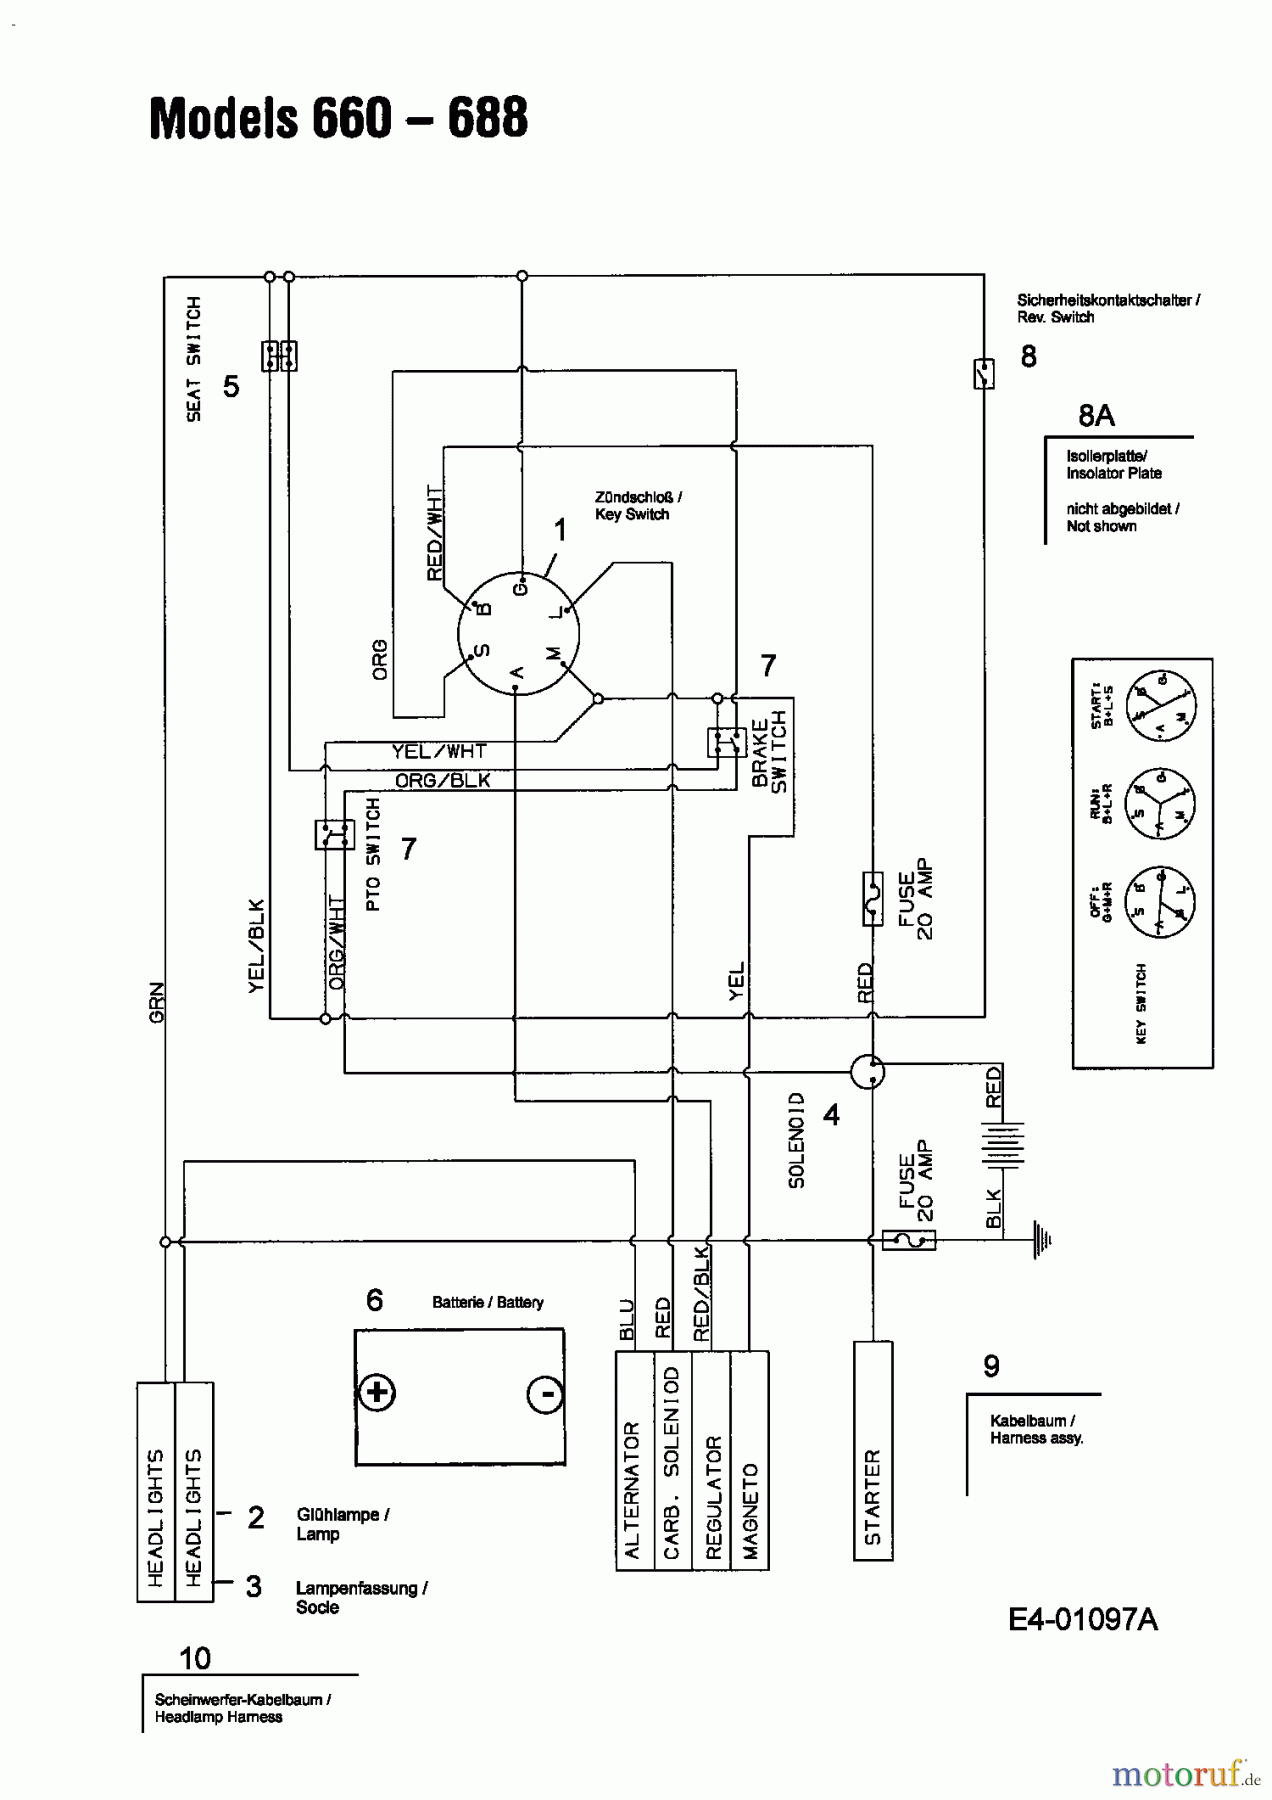  Motec Tracteurs de pelouse MTBS 300 13AC662F640  (2004) Plan électrique